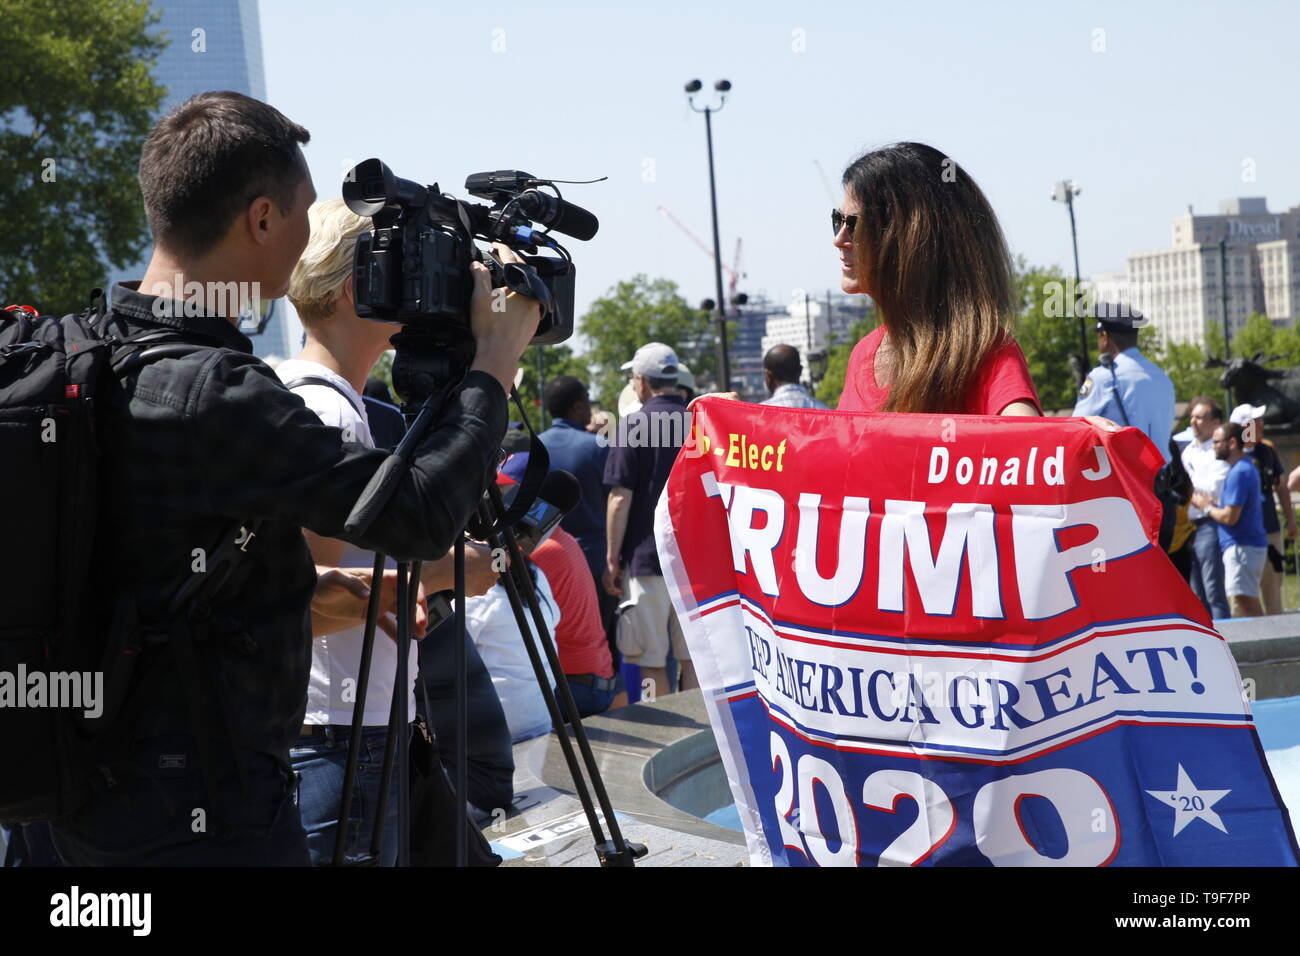 Philadelphia, PA, USA - Mai 18, 2019 : un défenseur Donald Trump attire l'attention des médias avant de Joe Biden Lancement officiel du rassemblement pour la campagne 2020 élection présidentielle américaine à Philadelphie, Pennsylvanie. Banque D'Images